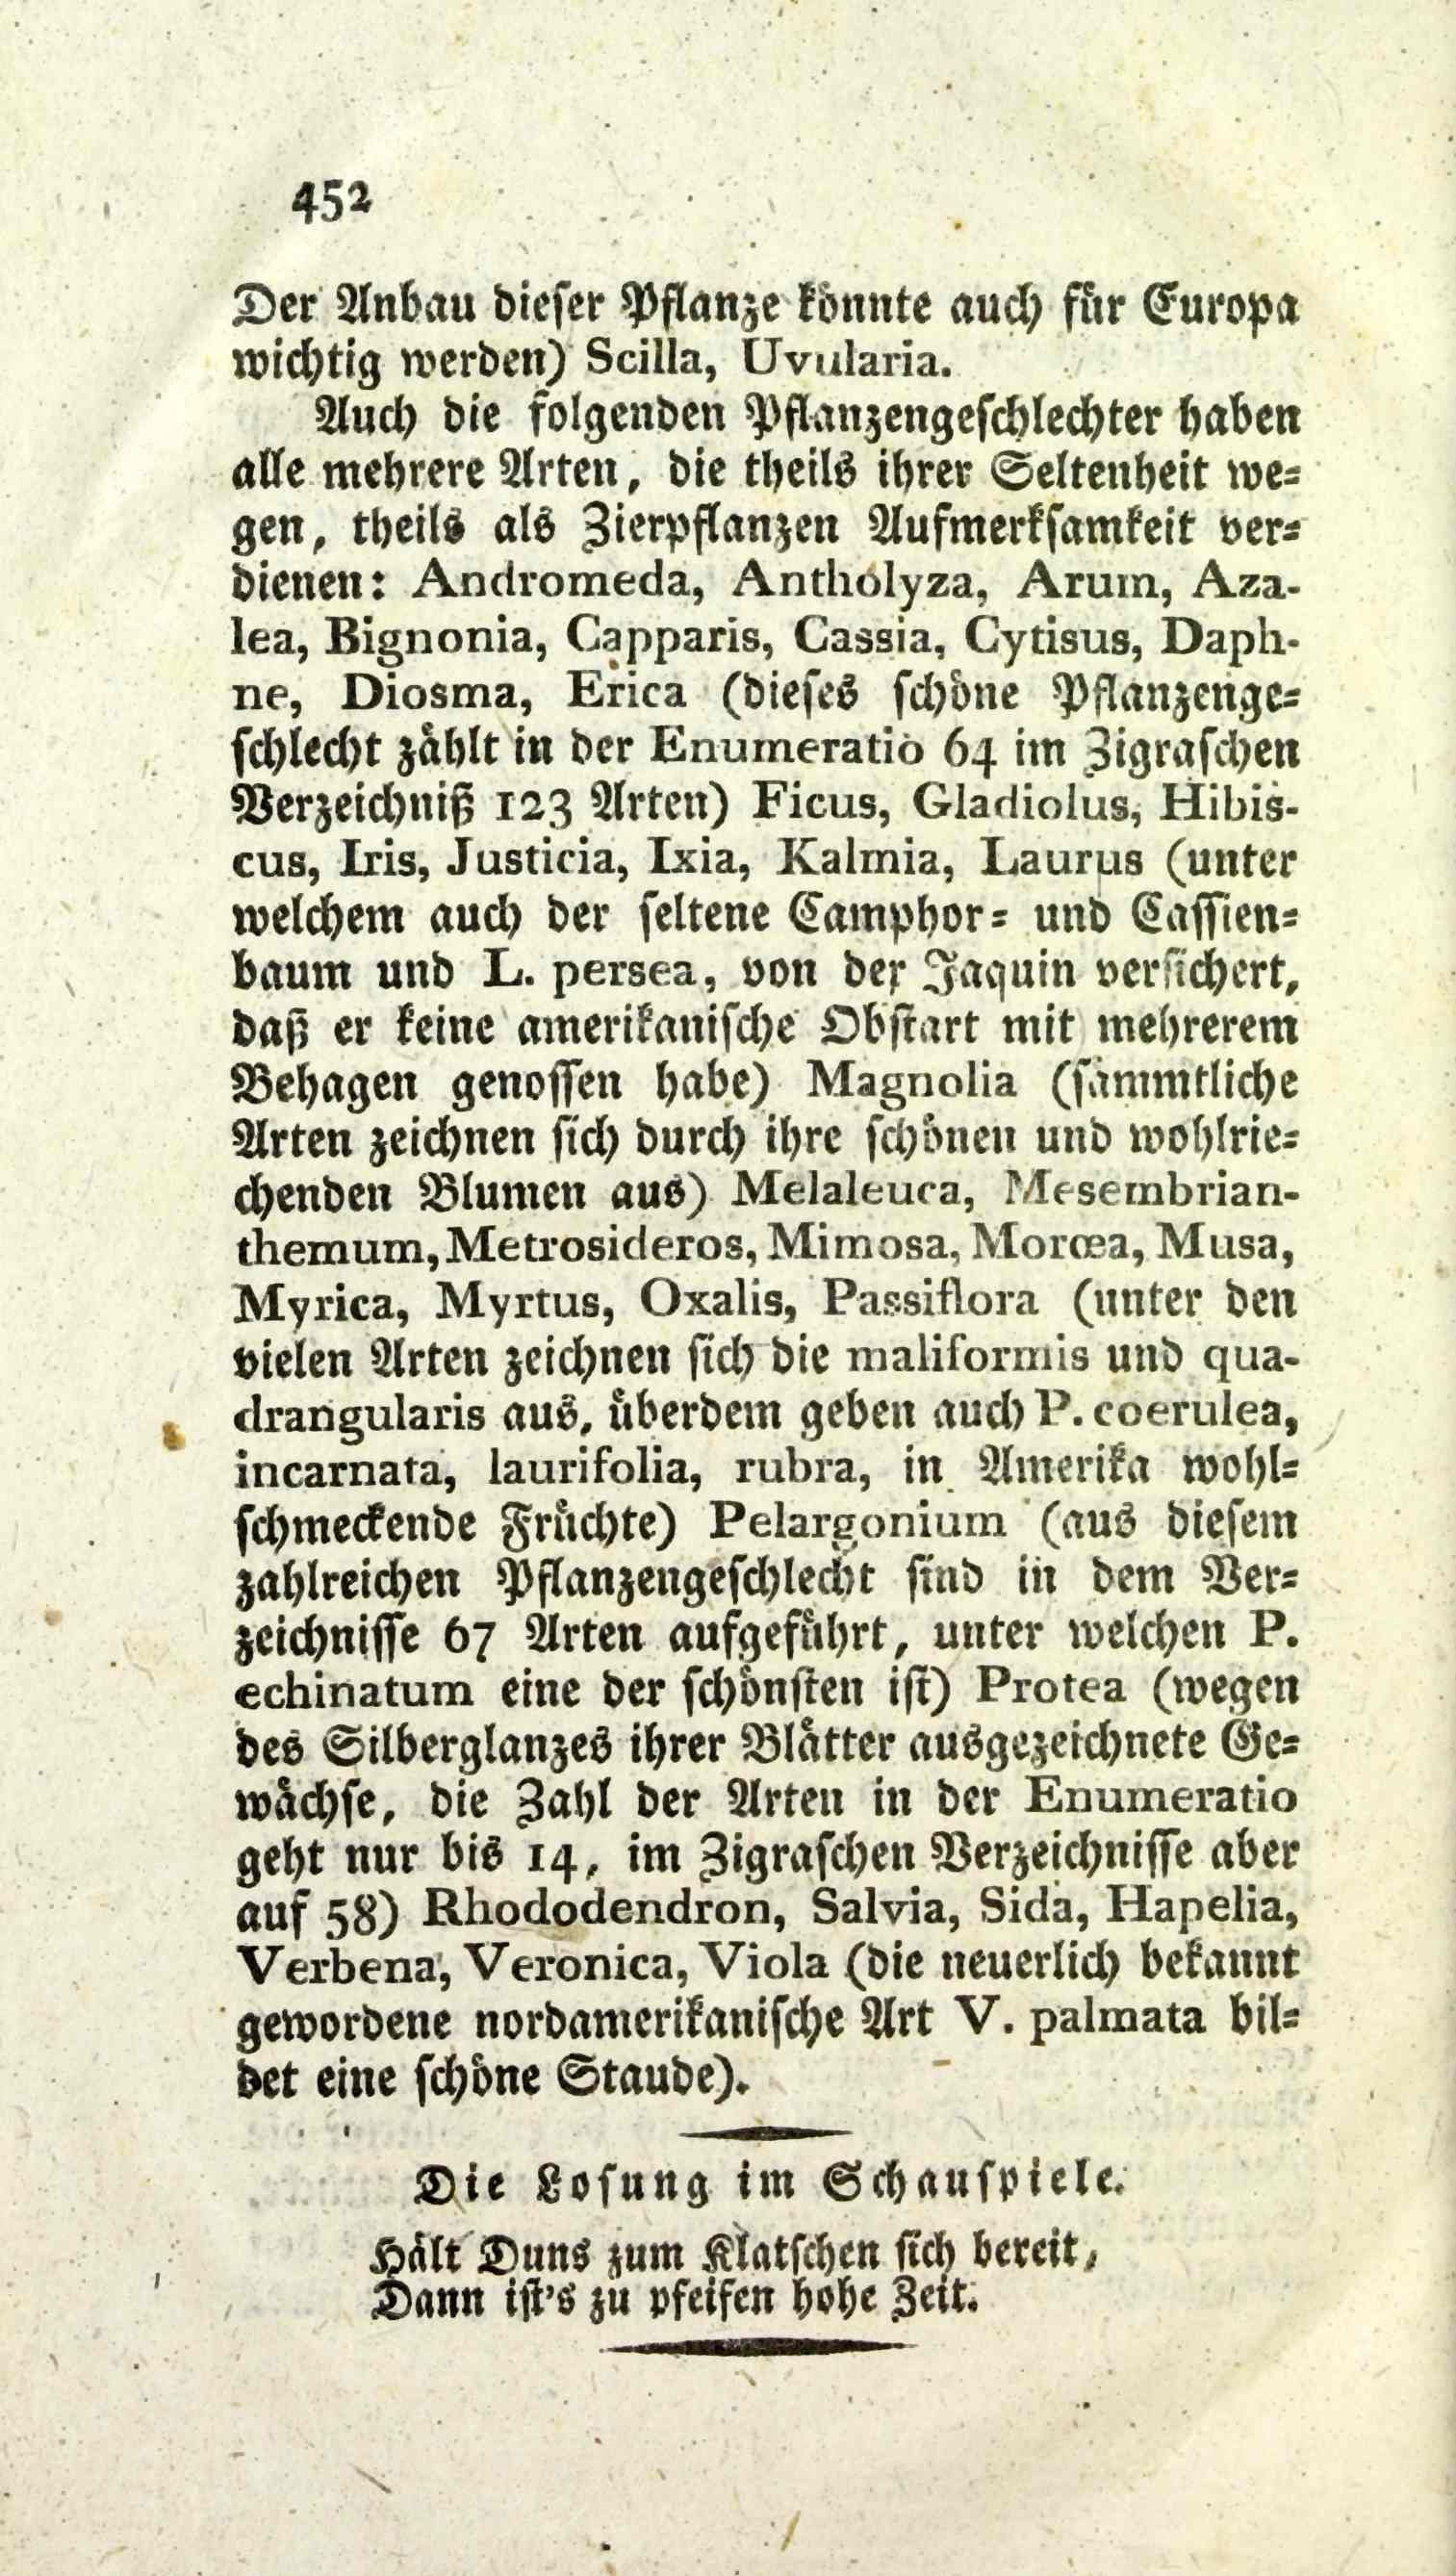 Wöchentliche Unterhaltungen [1] (1805) | 460. (452) Main body of text